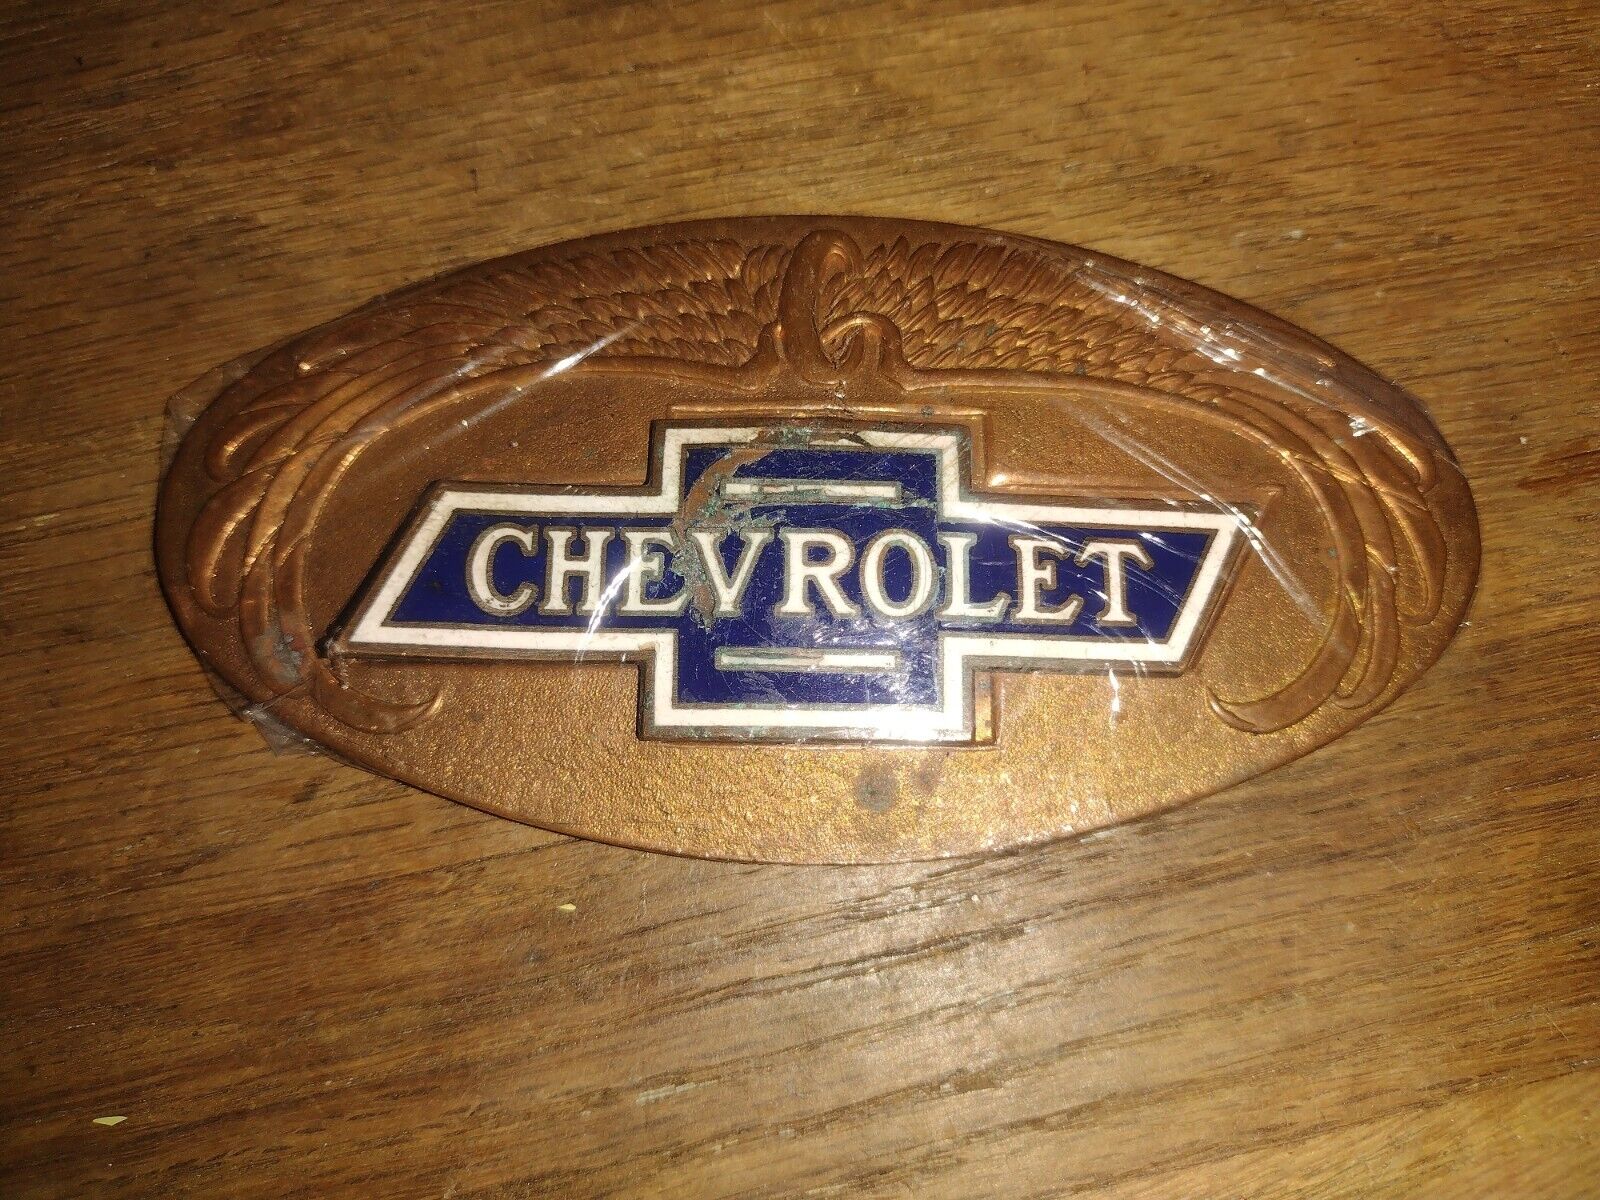 Original 1928 Chevrolet Radiator Emblem